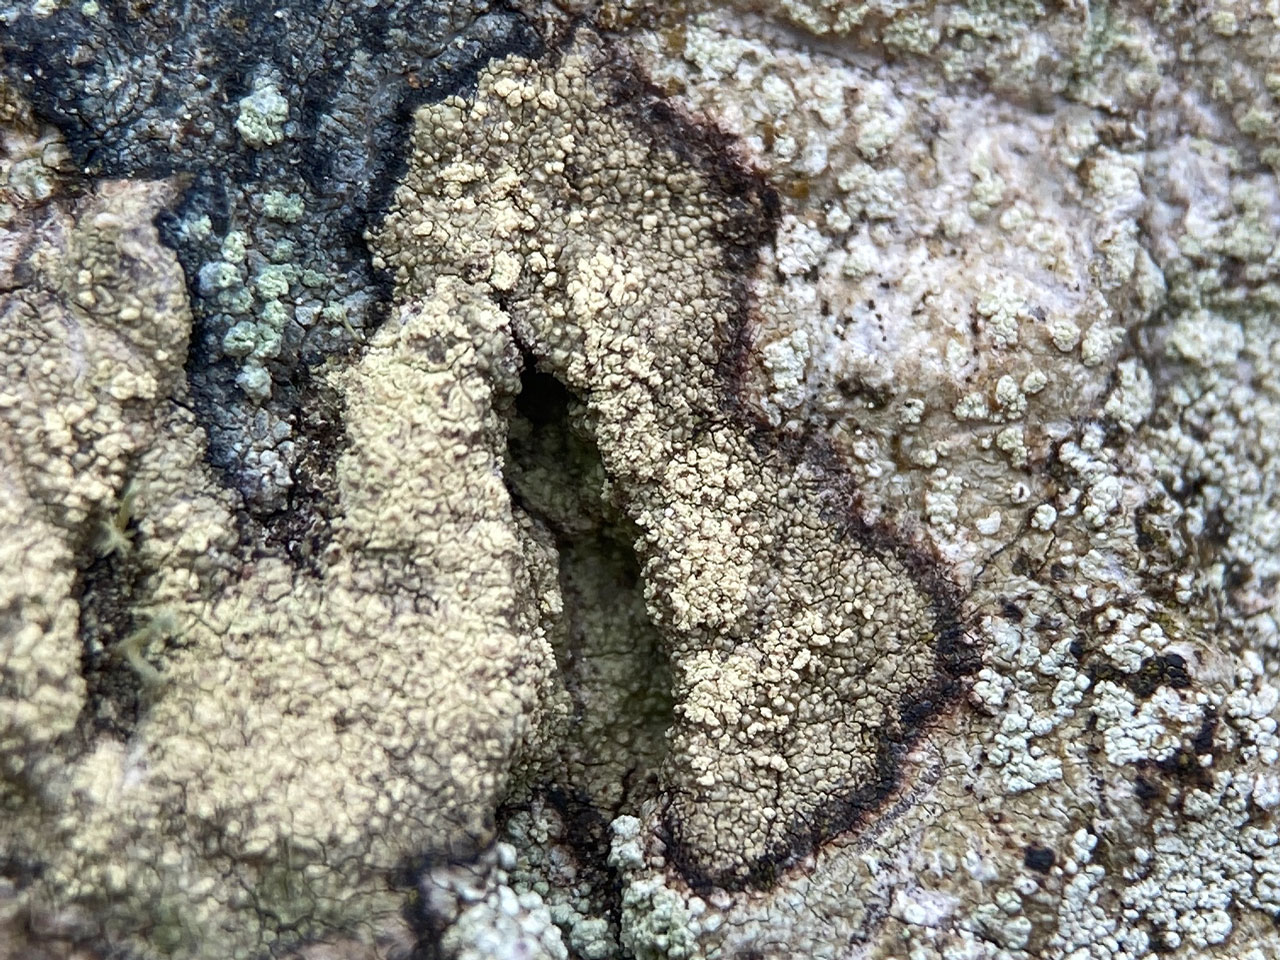 Lecanora alboflavida, Beech, Rushpole Wood, New Forest